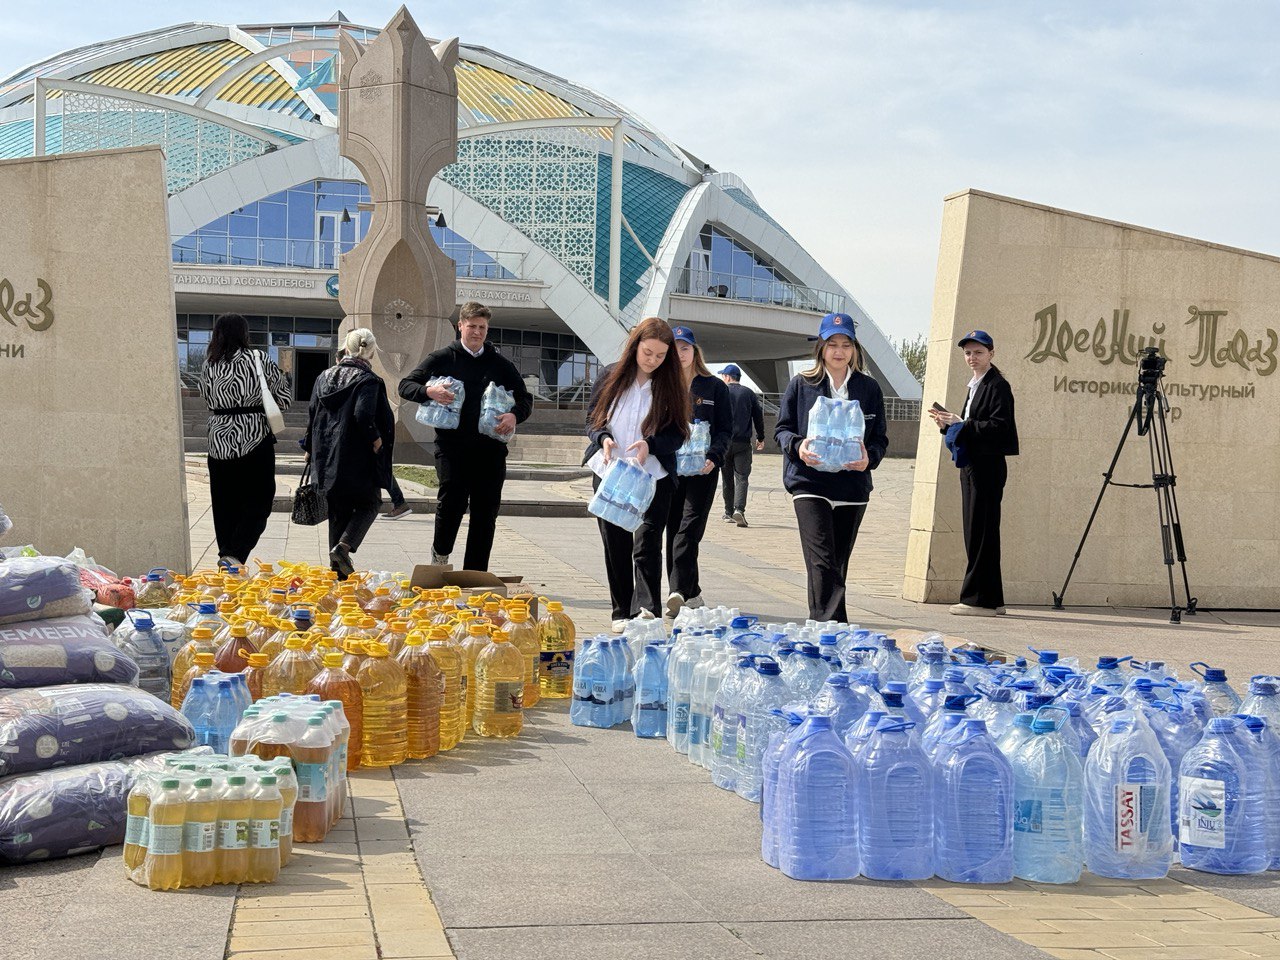 212 тонн гуманитарной помощи было отправлено Ассамблеей народа Казахстана пострадавшим от паводков